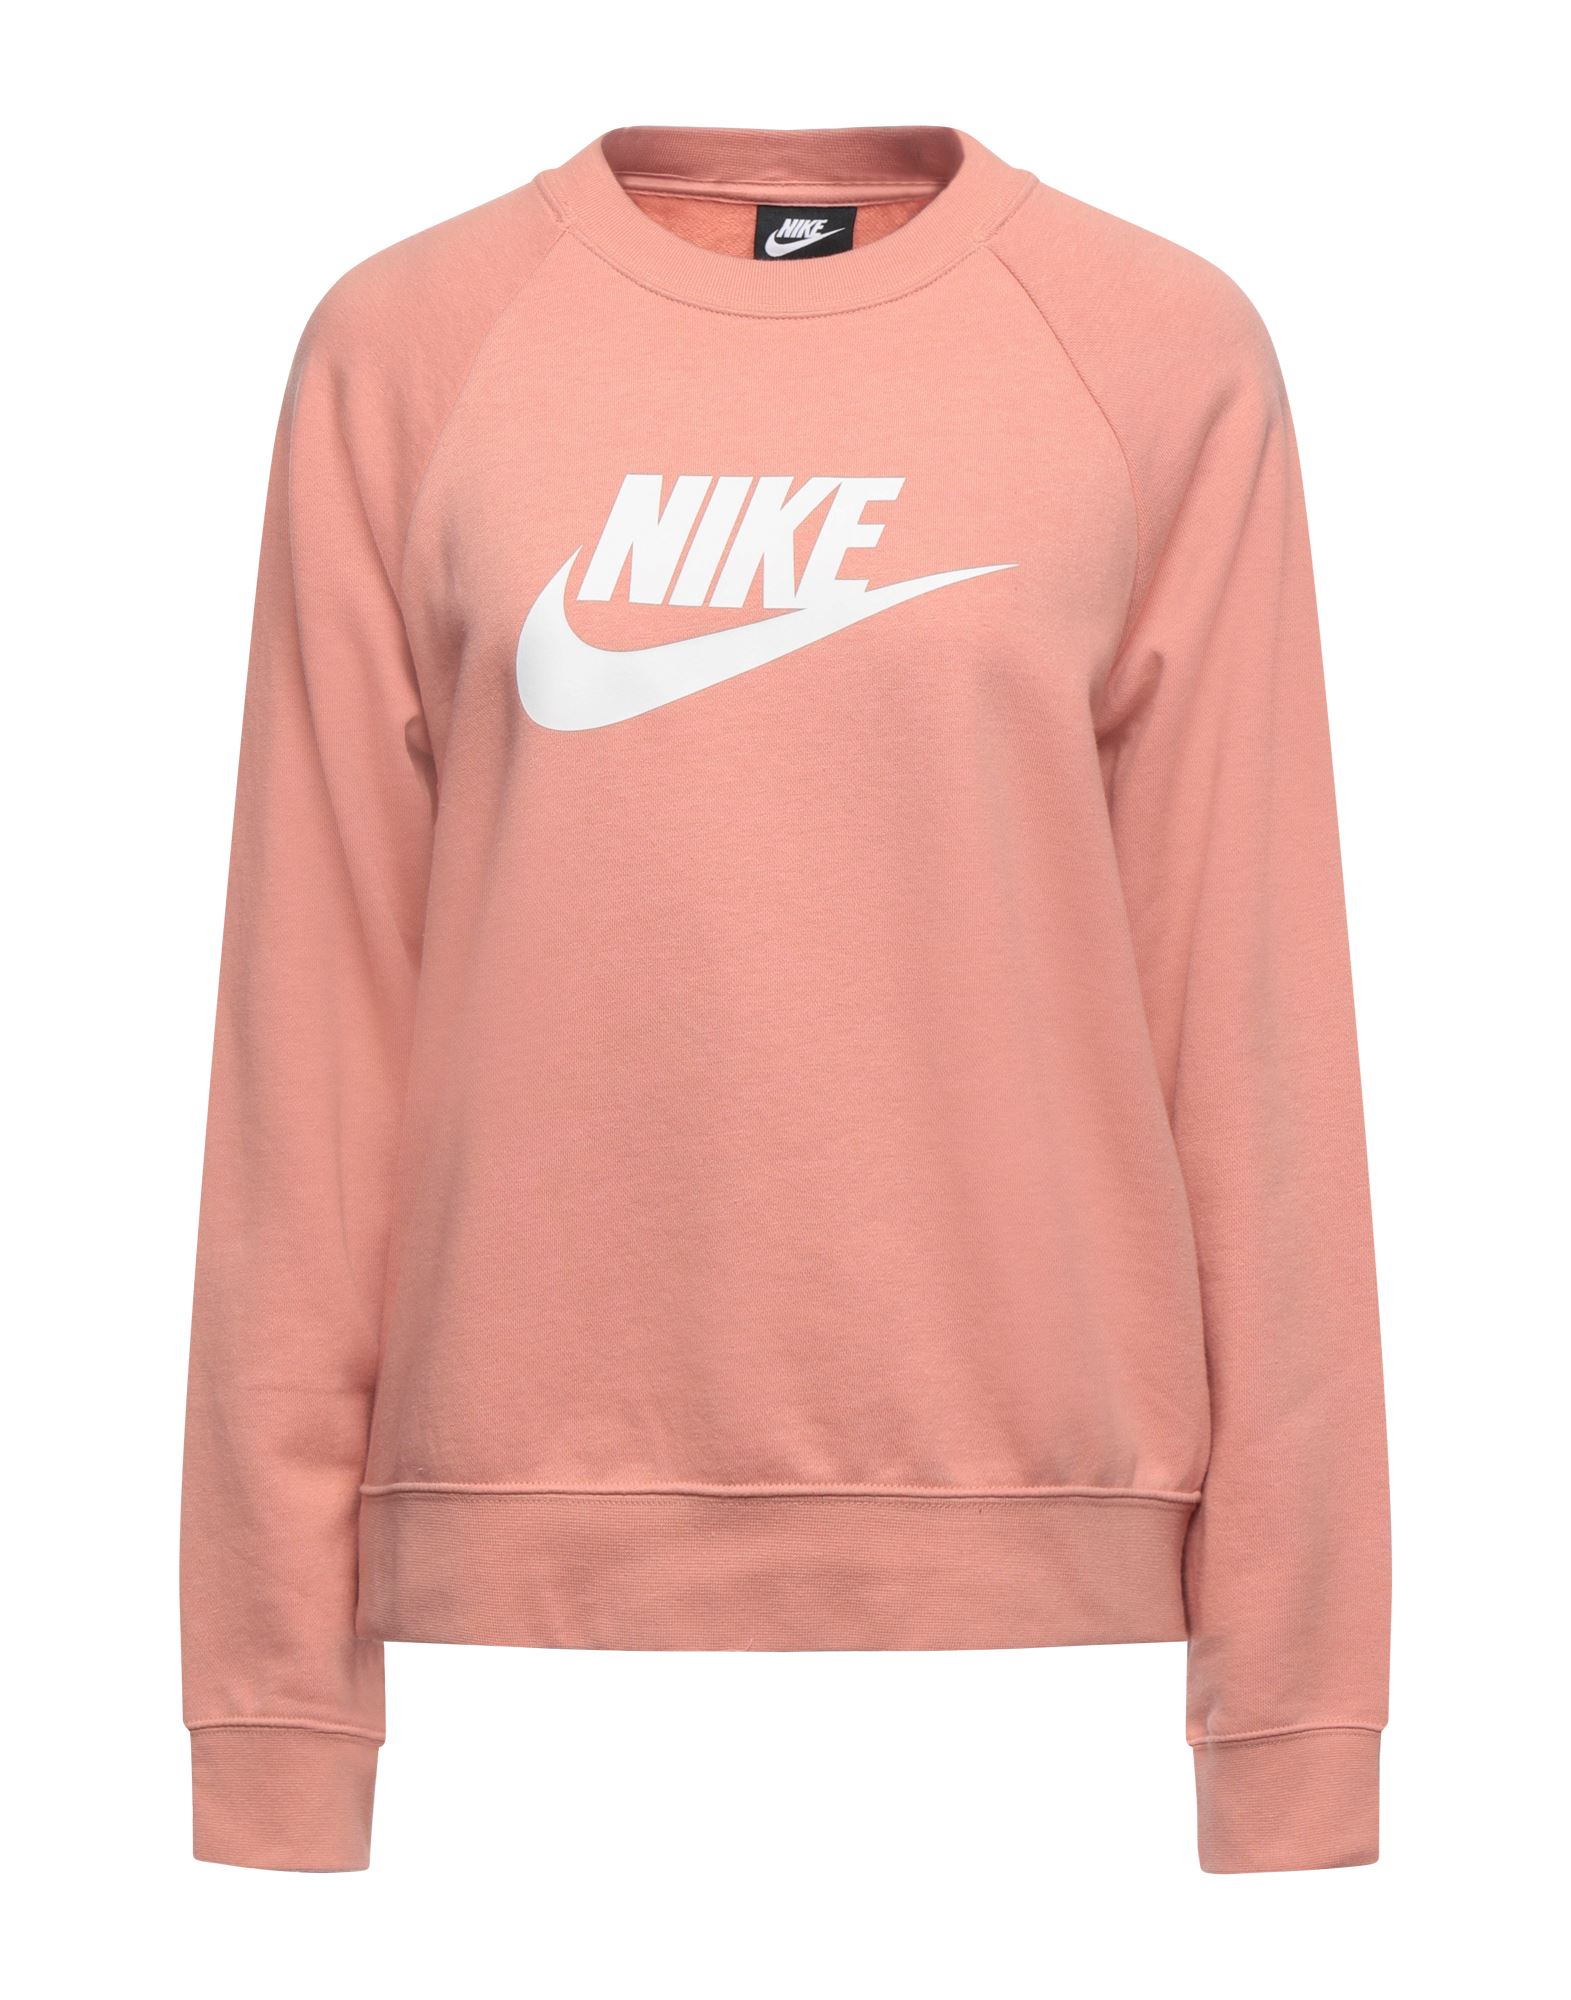 Nike Sweatshirts In Pastel Pink